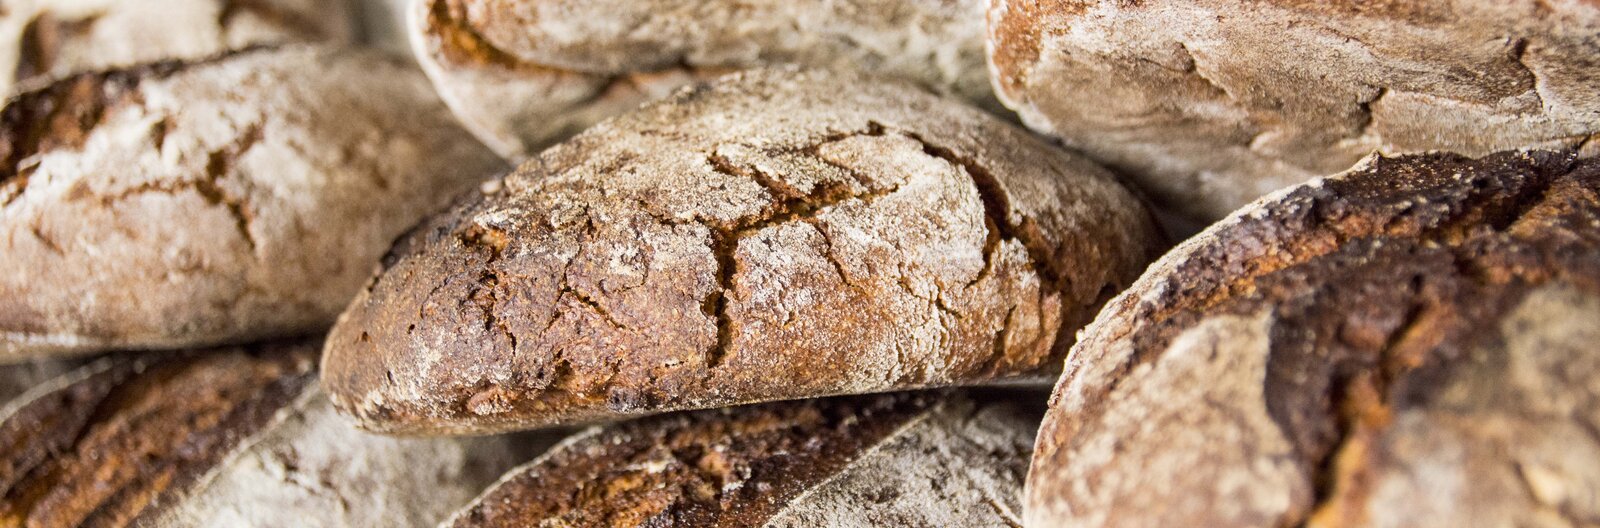 Hova menjünk egy jó kovászos kenyérért? – 5 pékséget ajánlunk